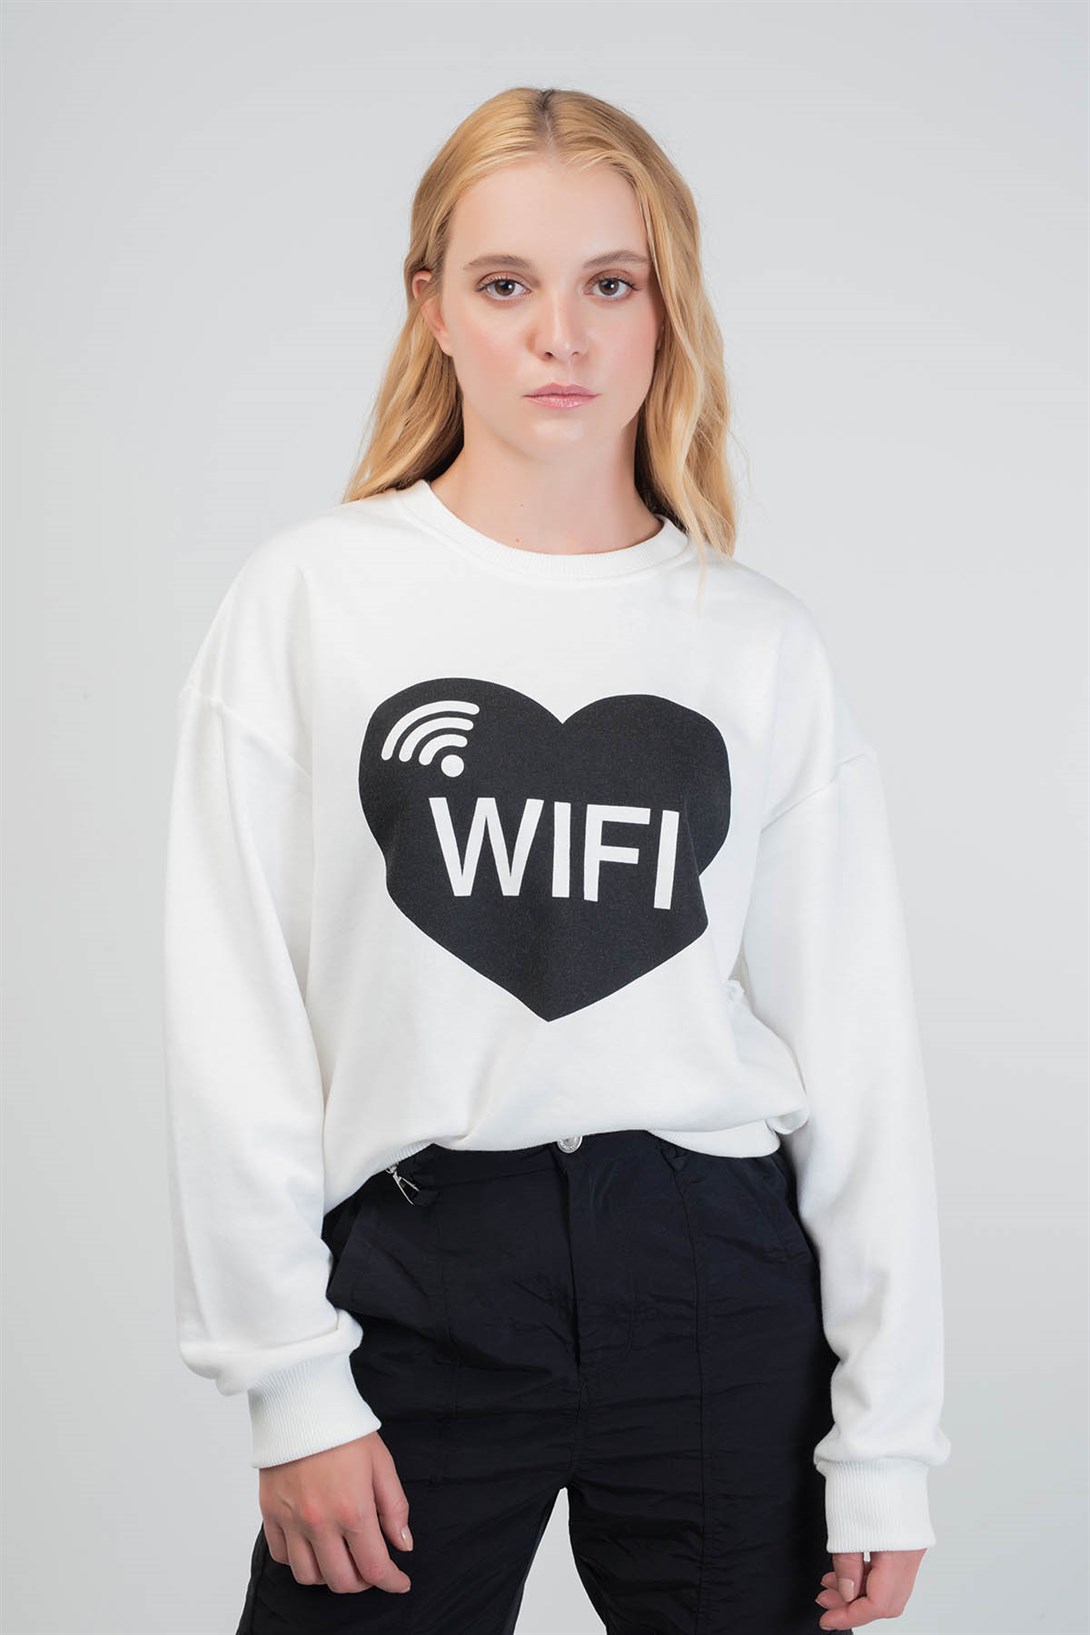 Trendiz Wifi Couple KadınYuvarlak Yaka Sweatshirt Beyaz 121101